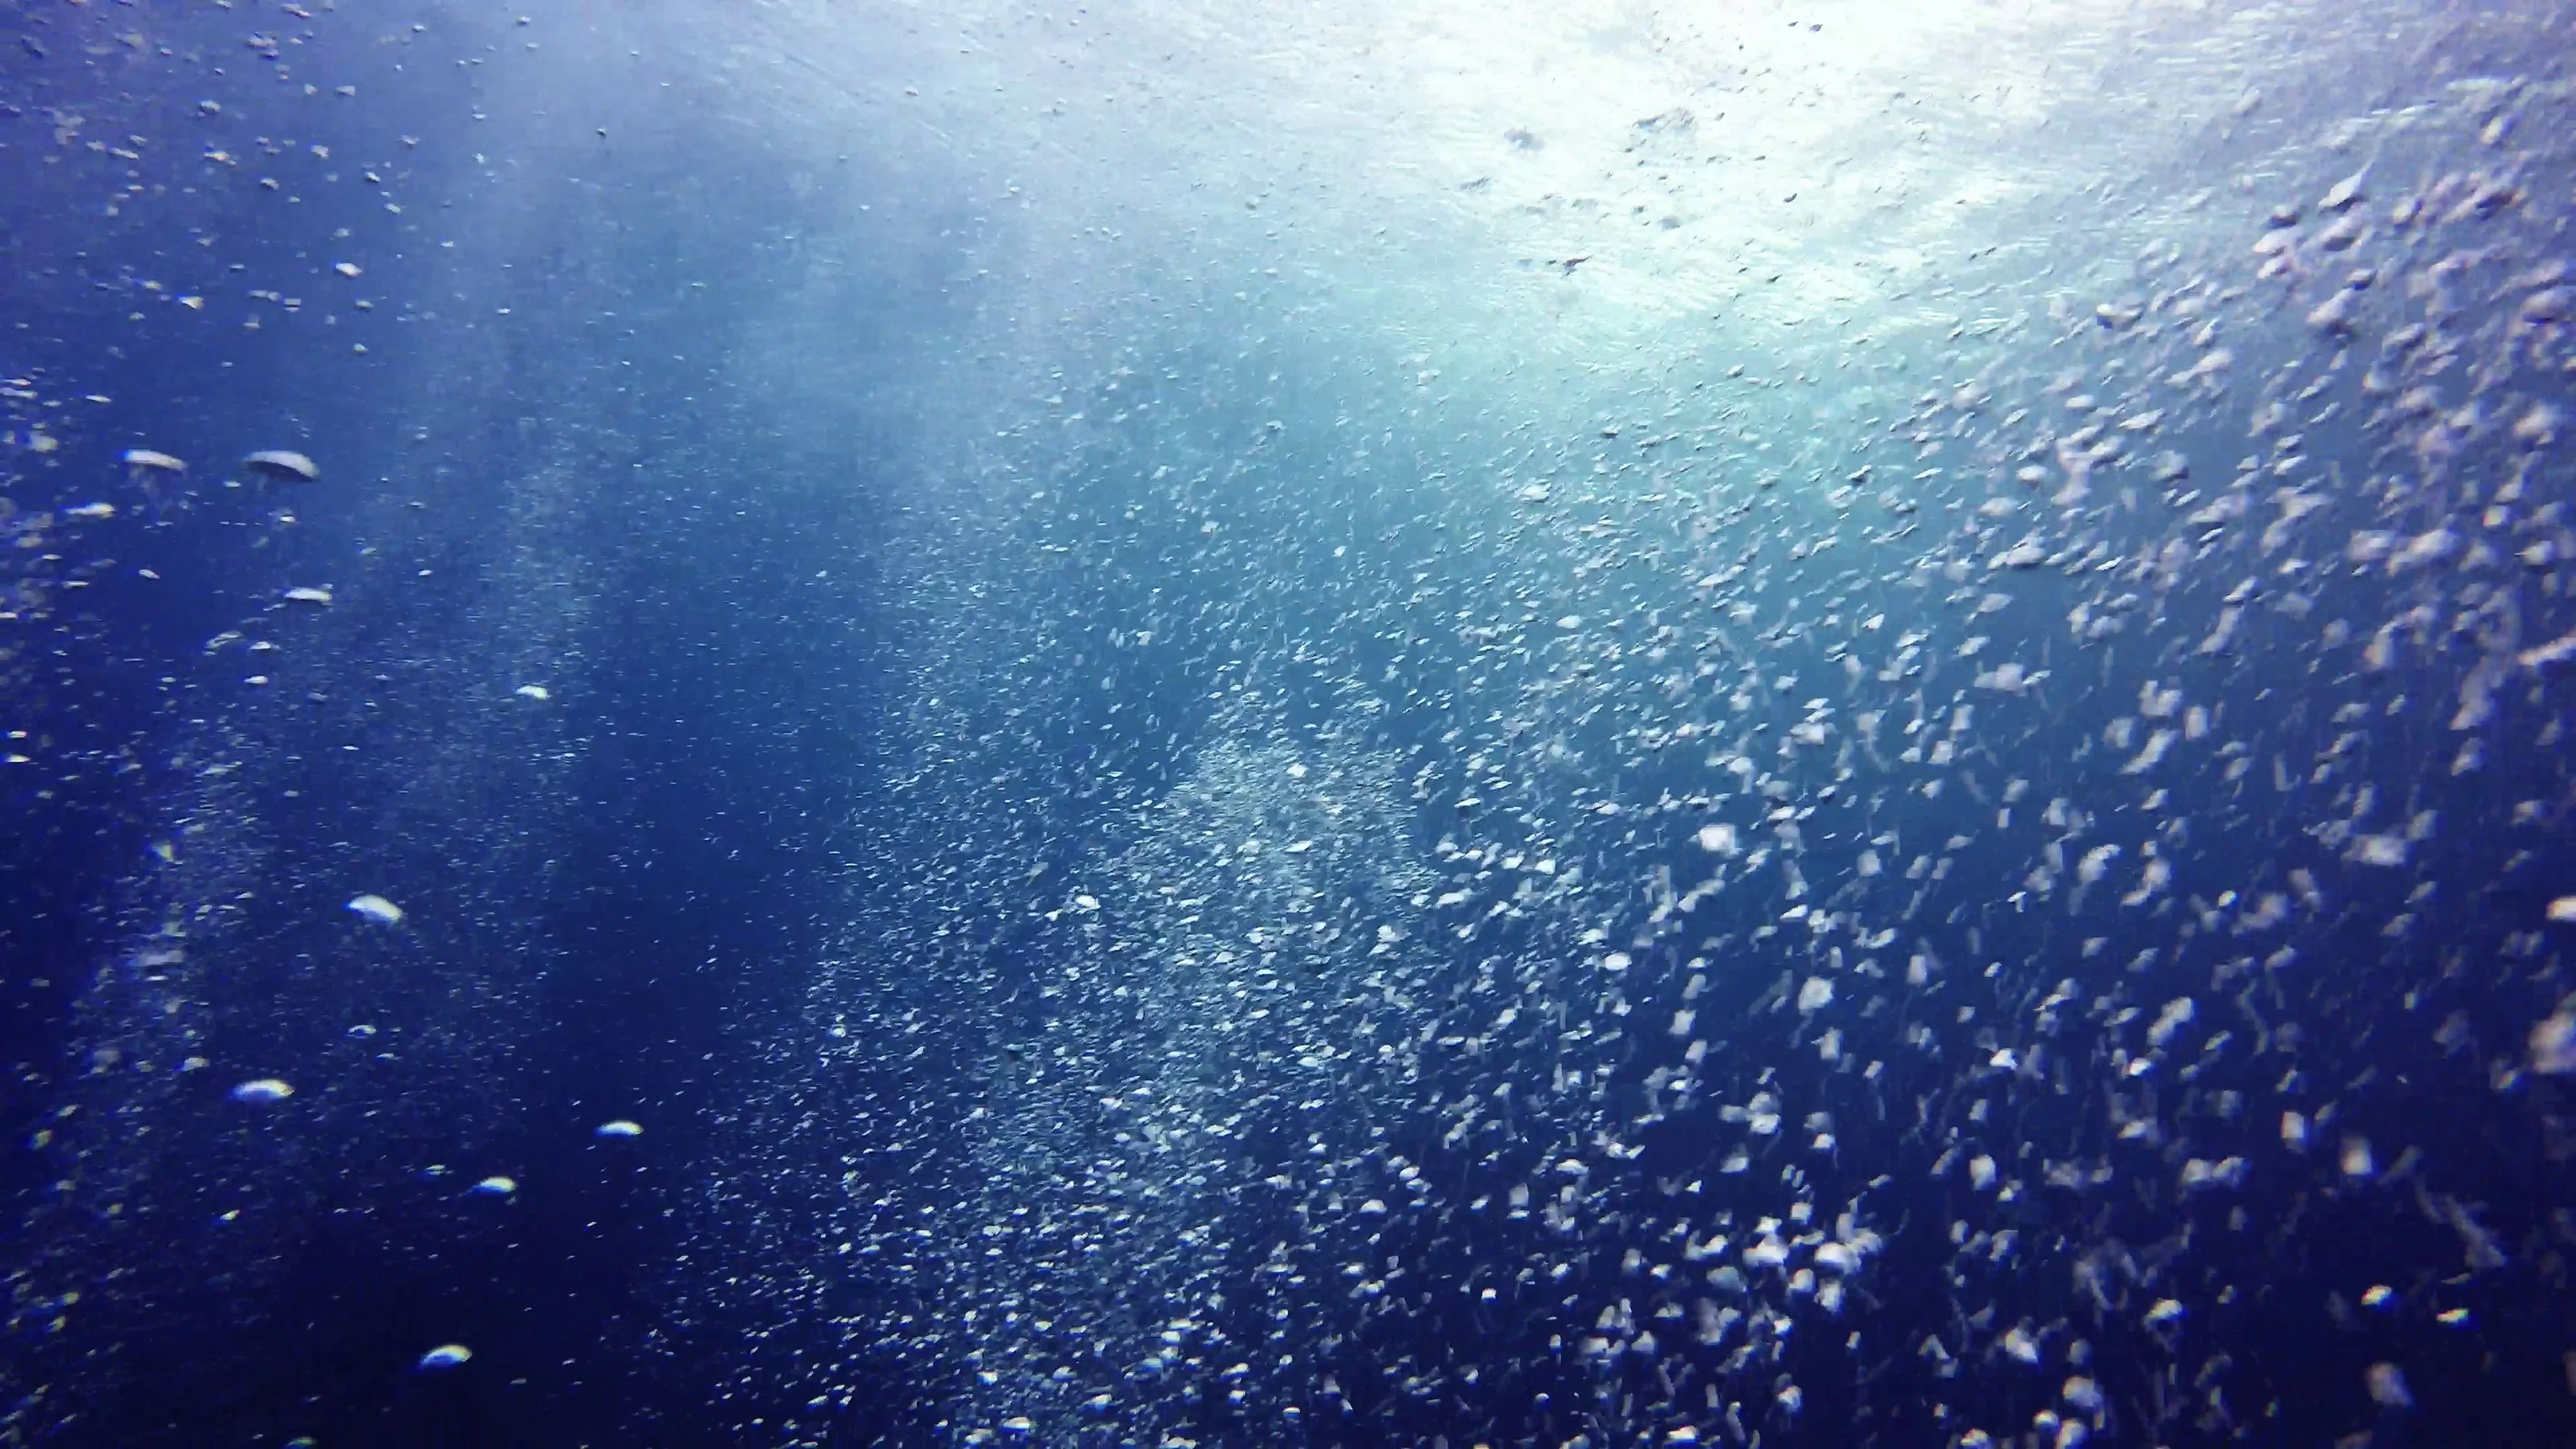 Sự huyền bí của bong bóng khí dưới nước luôn thu hút sự tò mò và ngưỡng mộ của con người. Với Stock Video của Pond5, bạn có thể thưởng thức những cảnh quay vàng son của bong bóng tuyệt đẹp dưới đáy đại dương, và tận hưởng những giây phút thư giãn đầy bình yên.